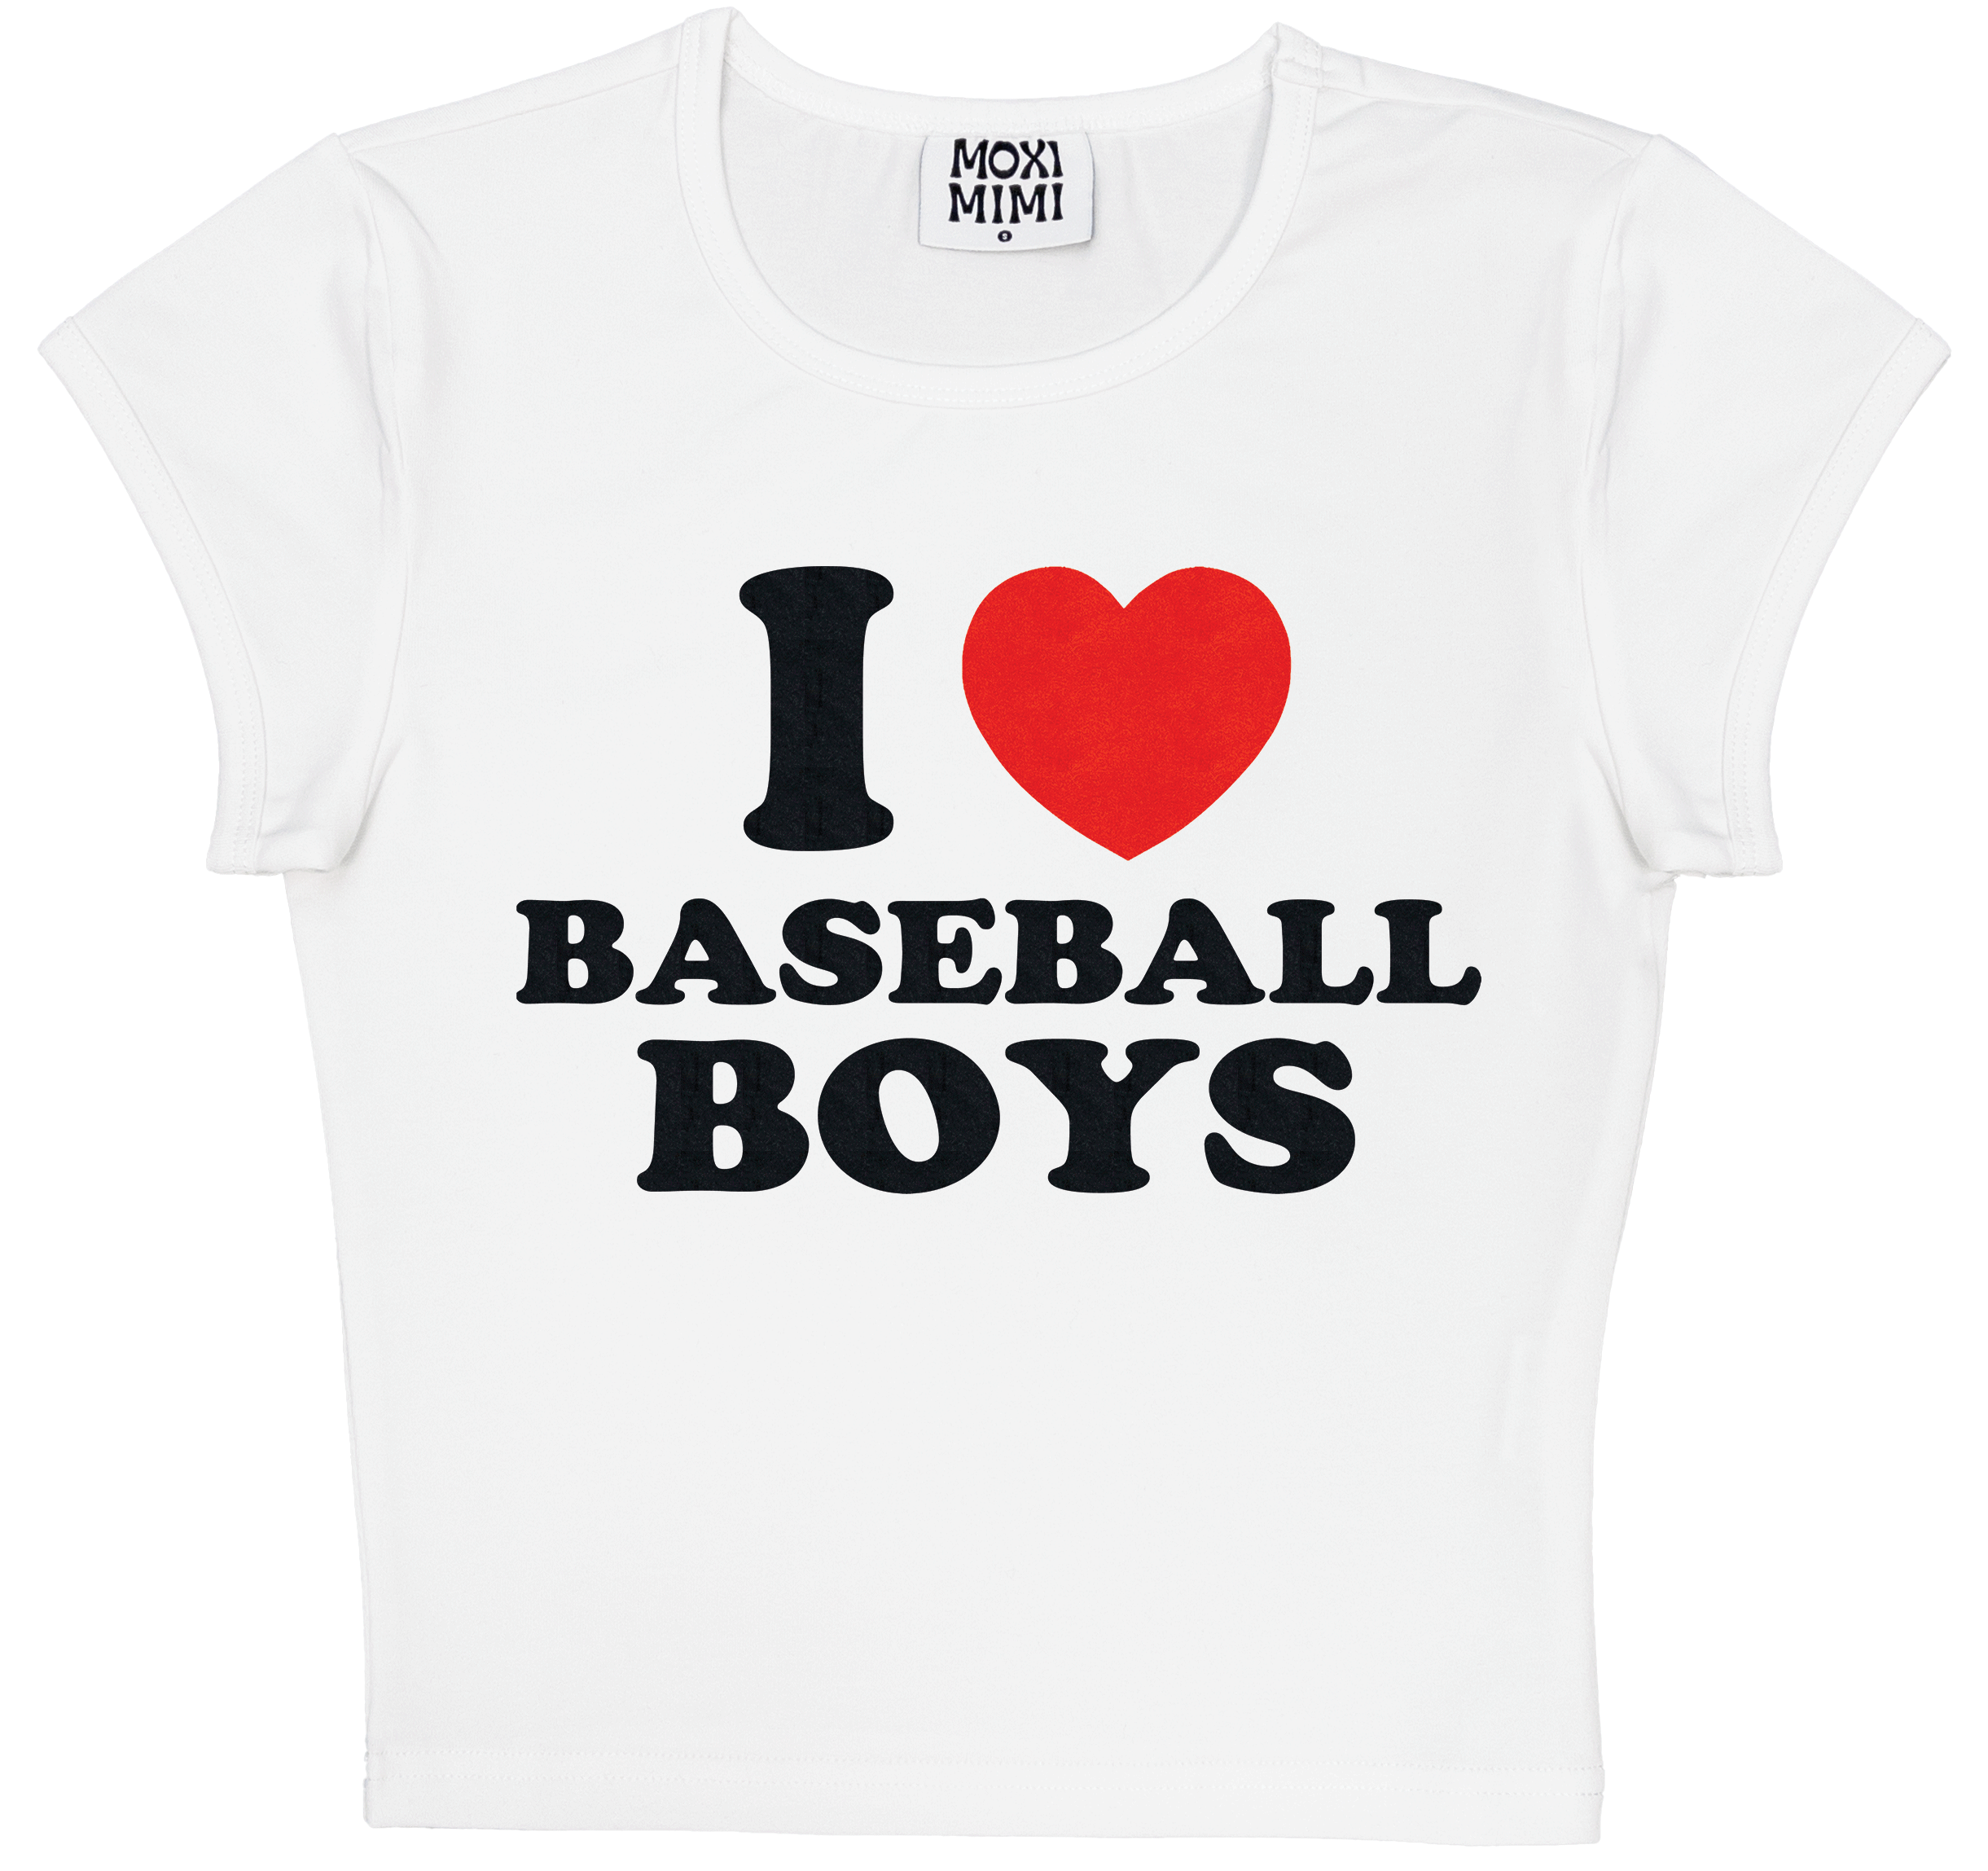 Ink Detroit Motor City Kitty Toddler Baseball T-Shirt